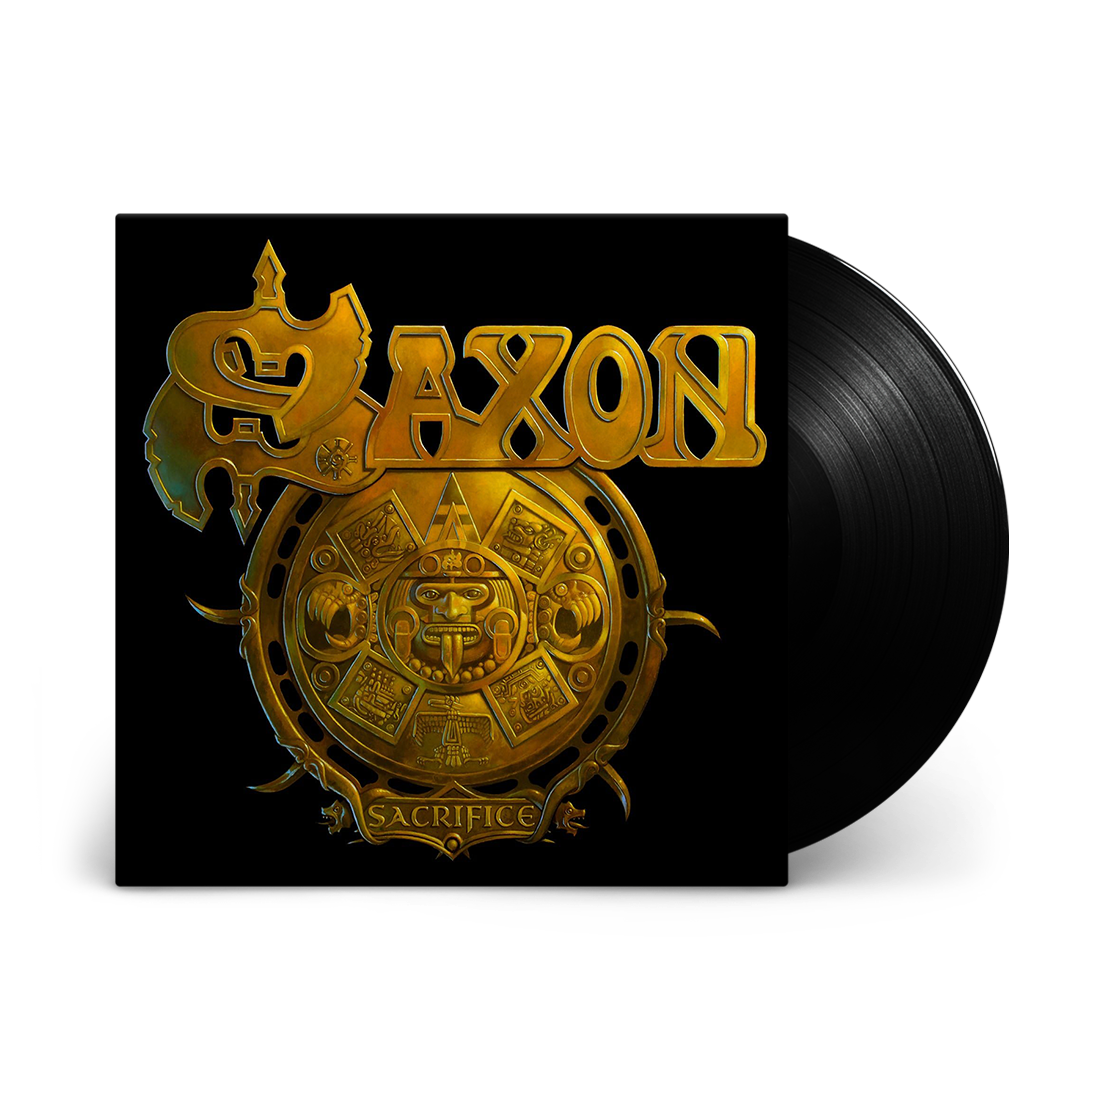 Saxon - Sacrifice: Vinyl LP